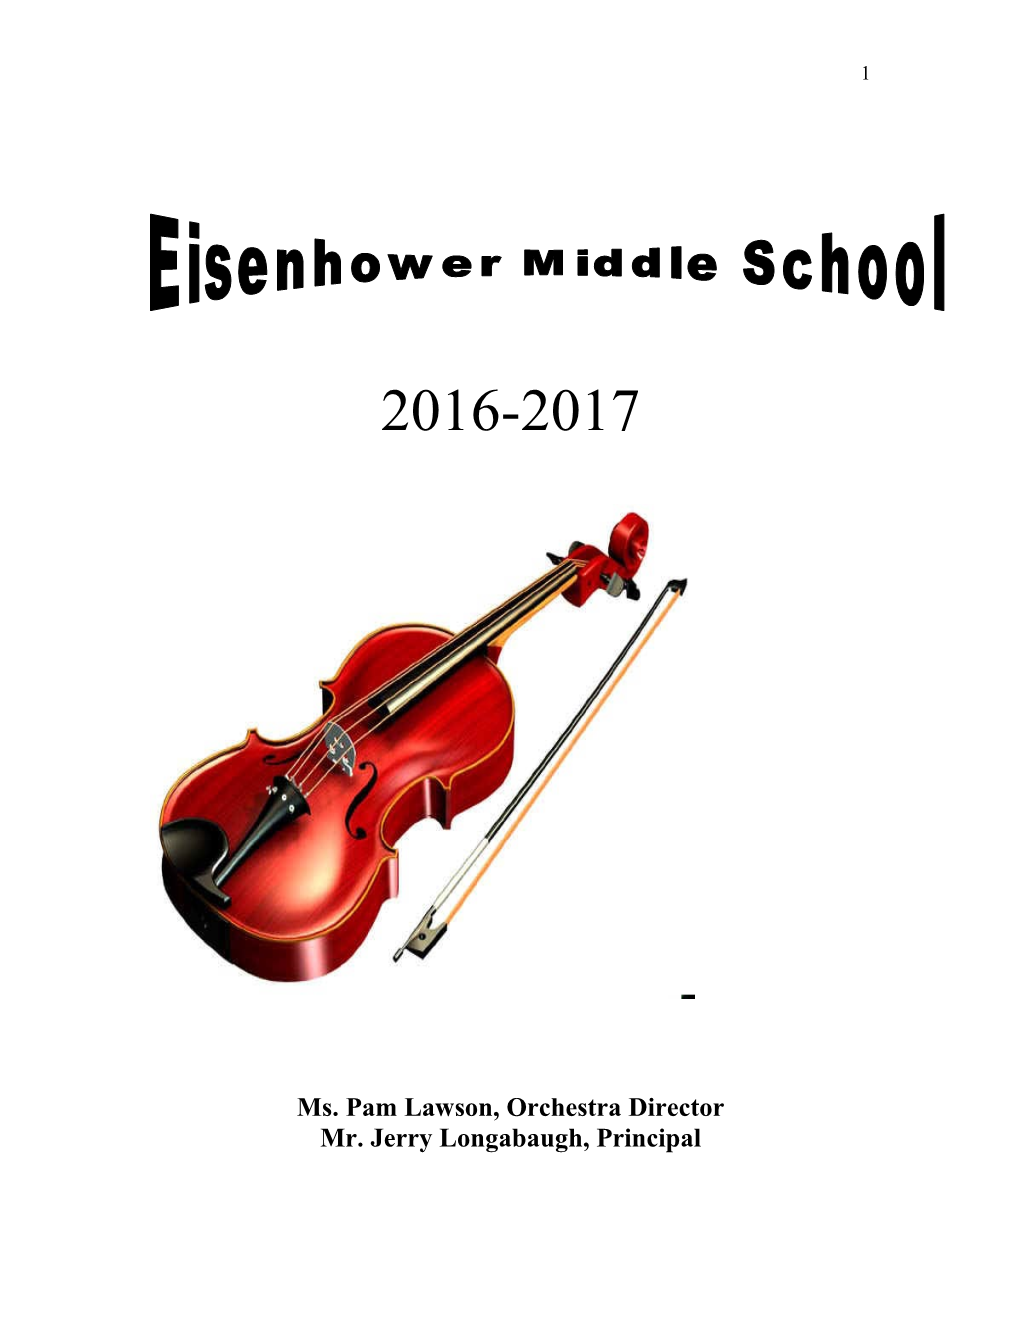 Eisenhower Middle School Orchestras